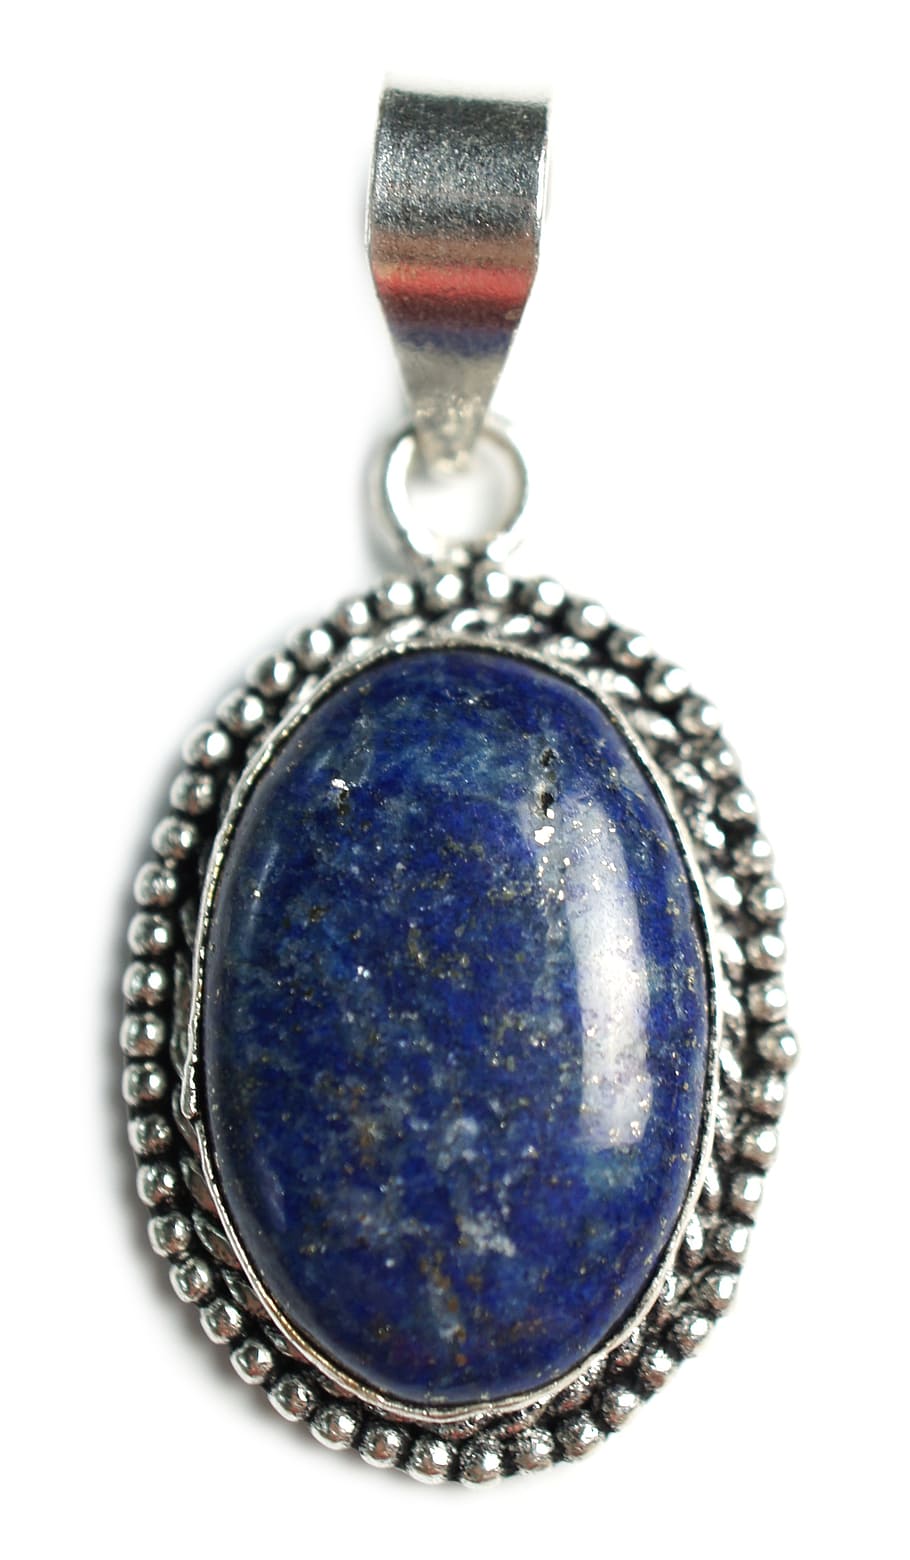 azul, colgante de cabujón, blanco, superficie, lapislázuli, piedra, colgante, piedras preciosas, gemas, hecho a mano